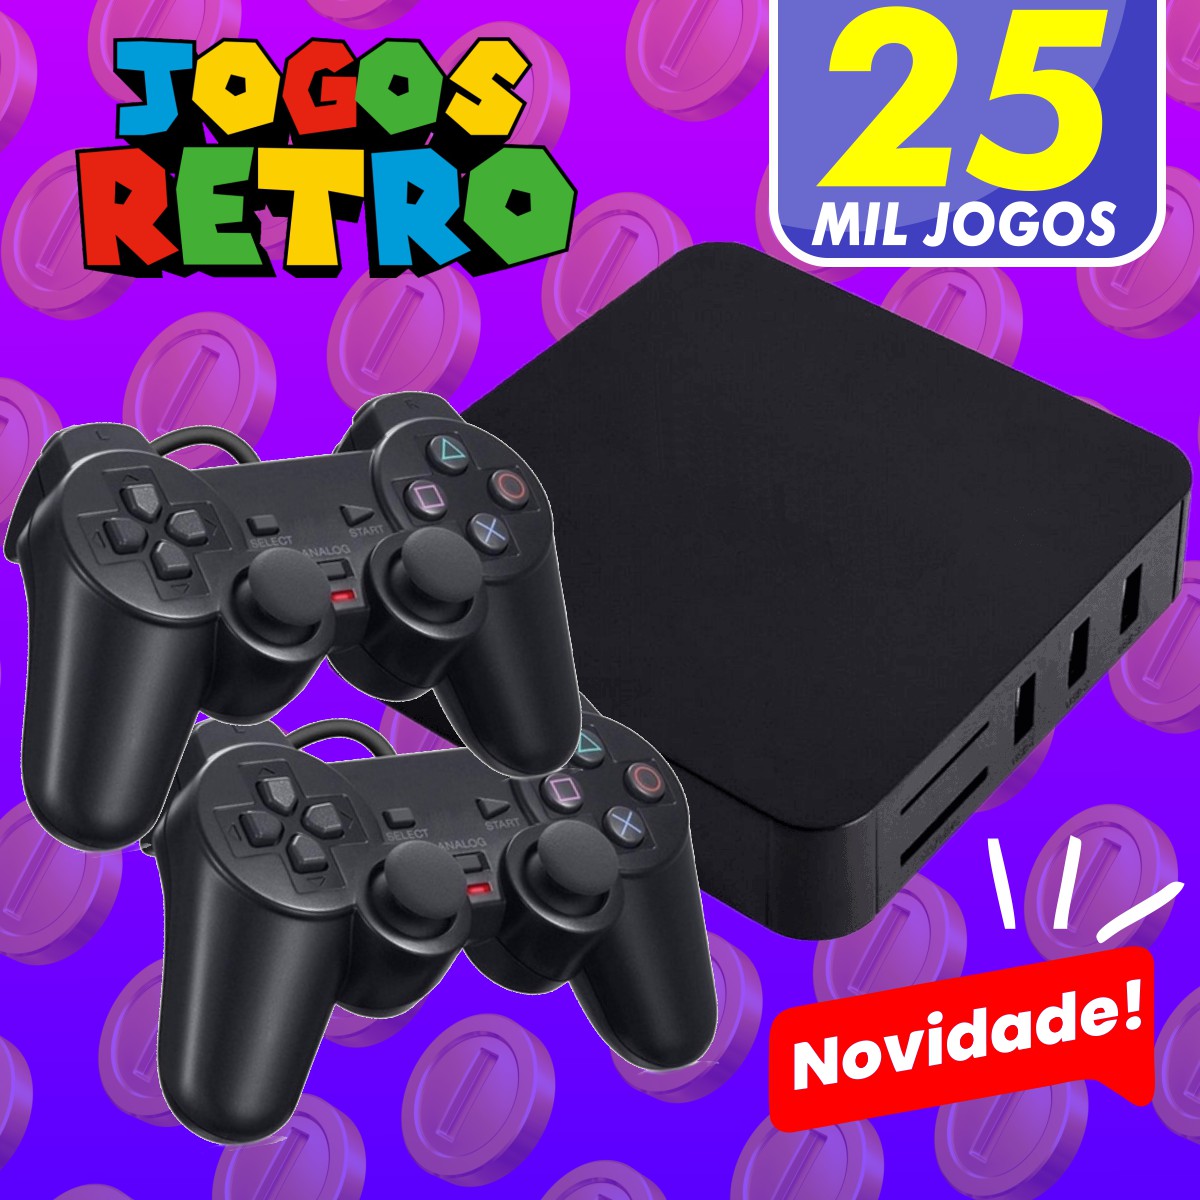 Console Retro Game Nintendo 25 Mil Jogos Clássicos - JOGOS RETRO